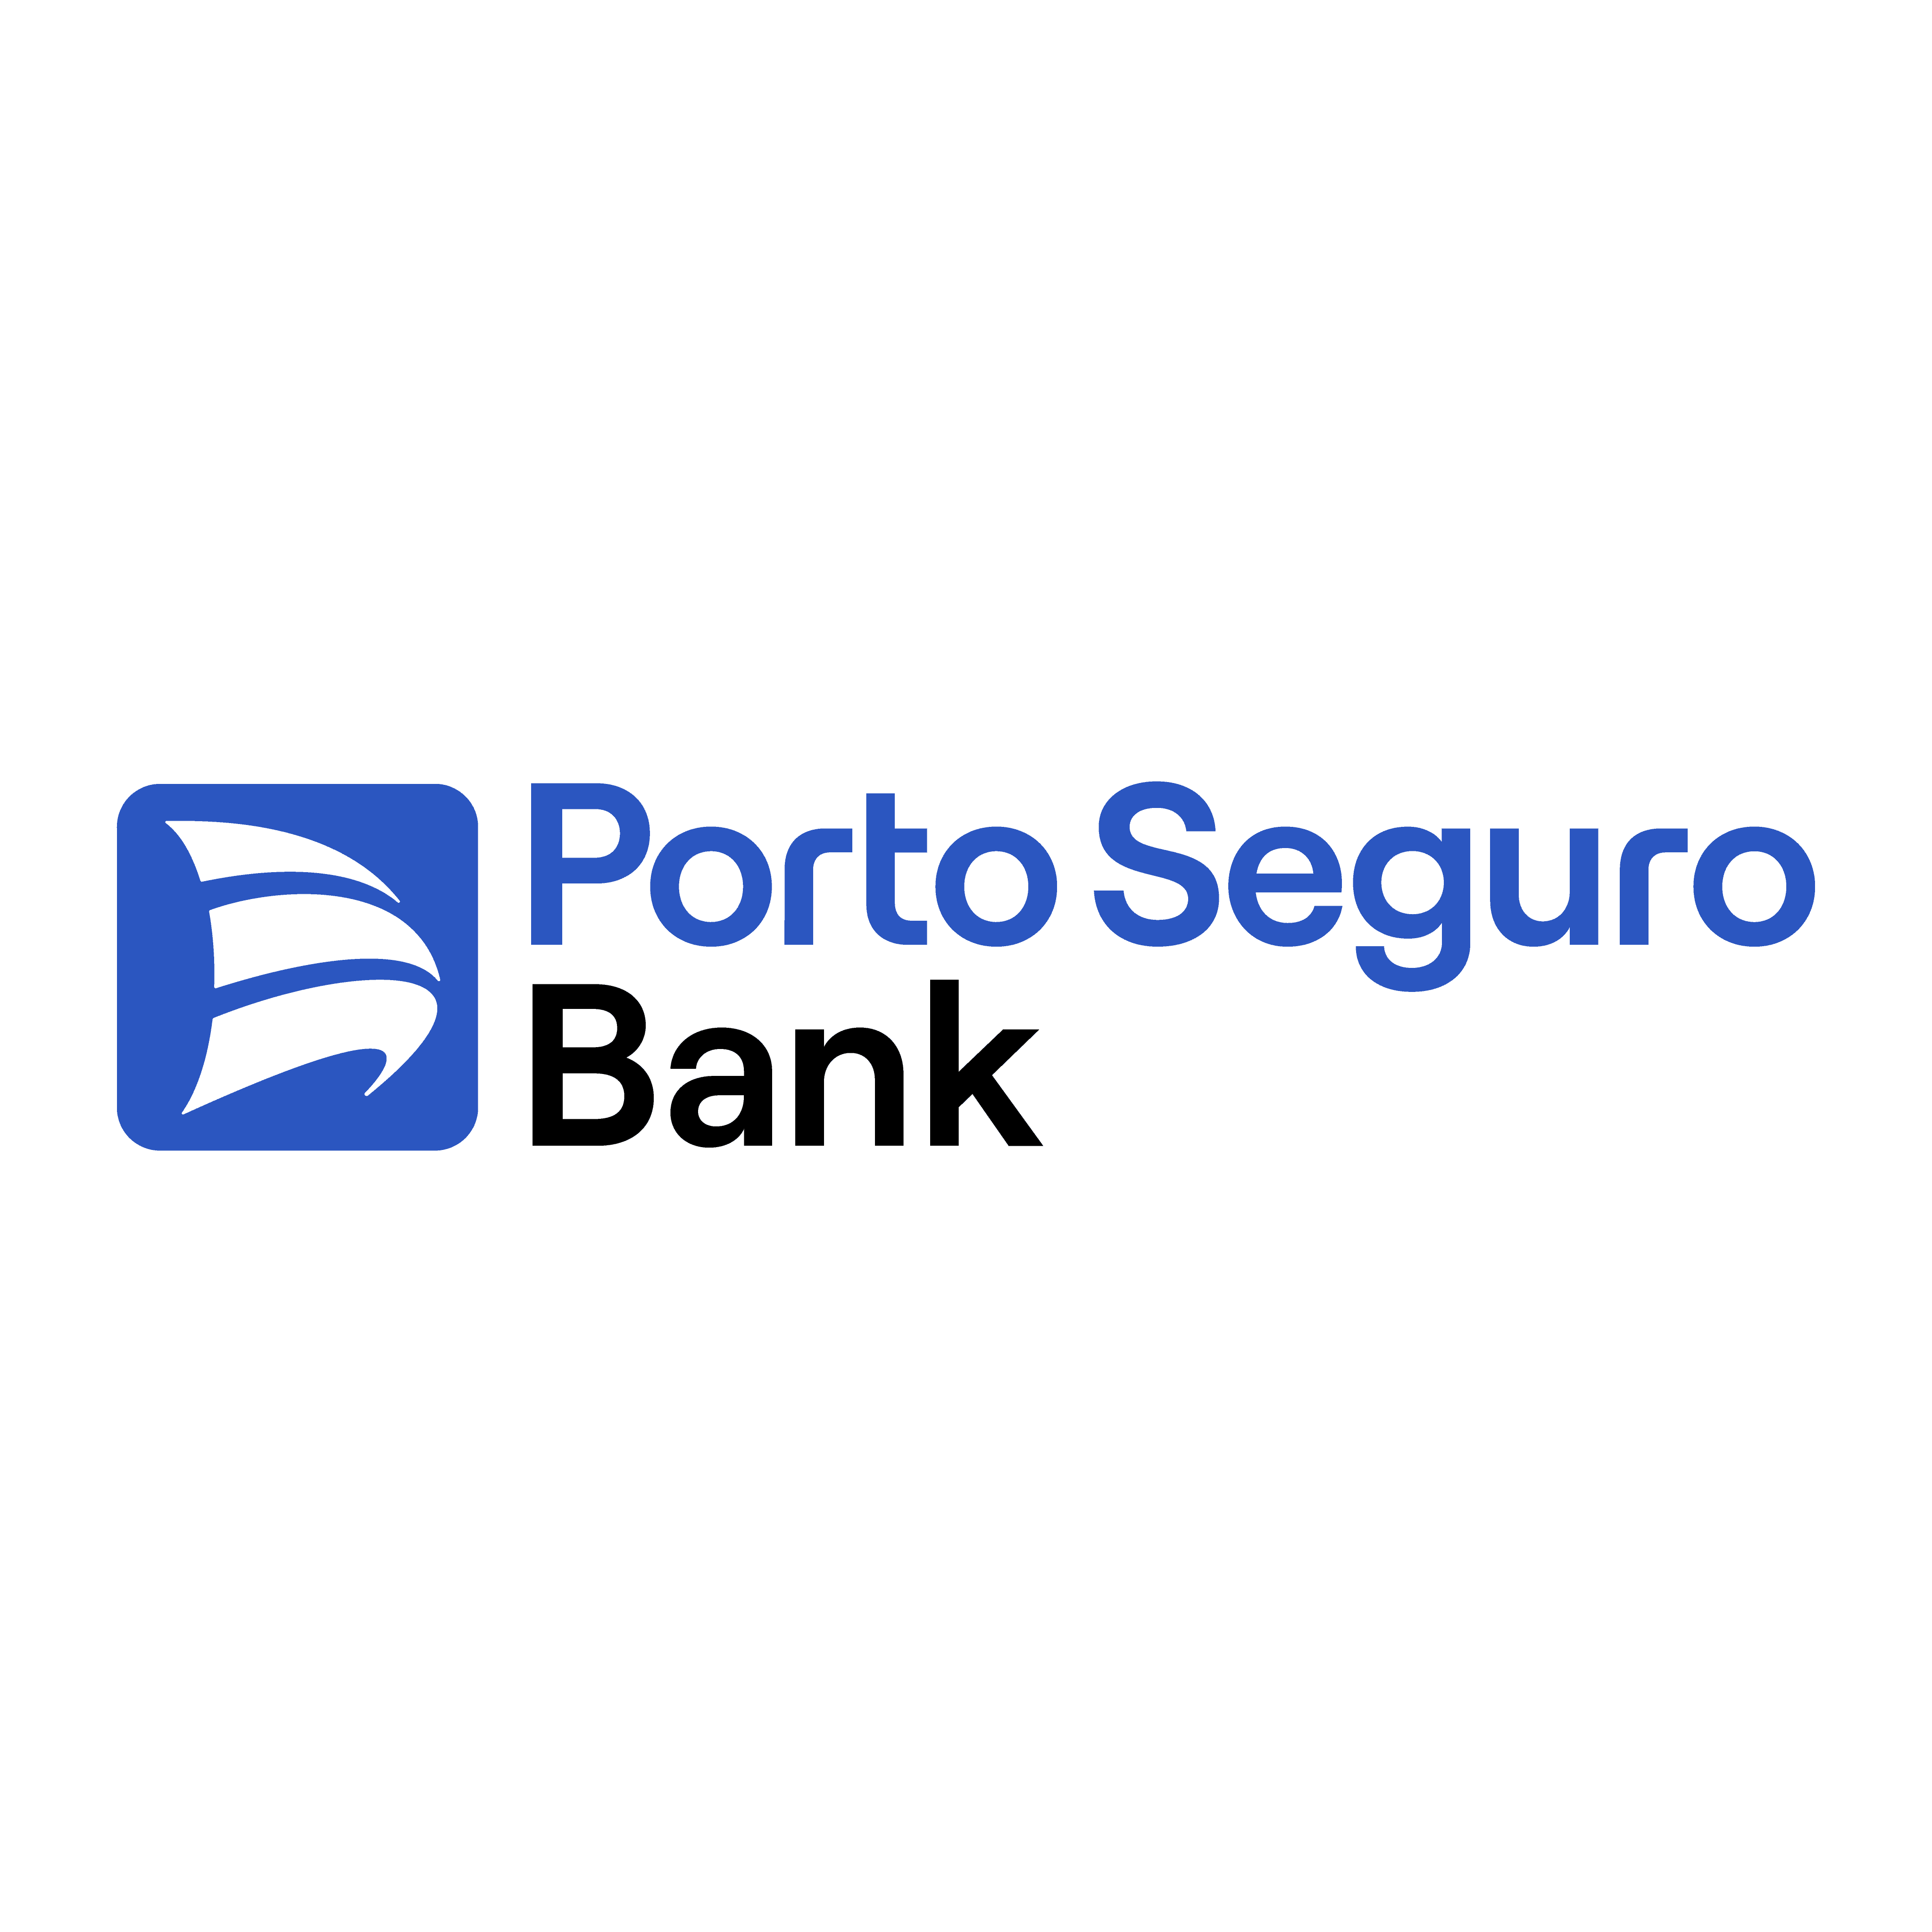 brasão porto seguro bank